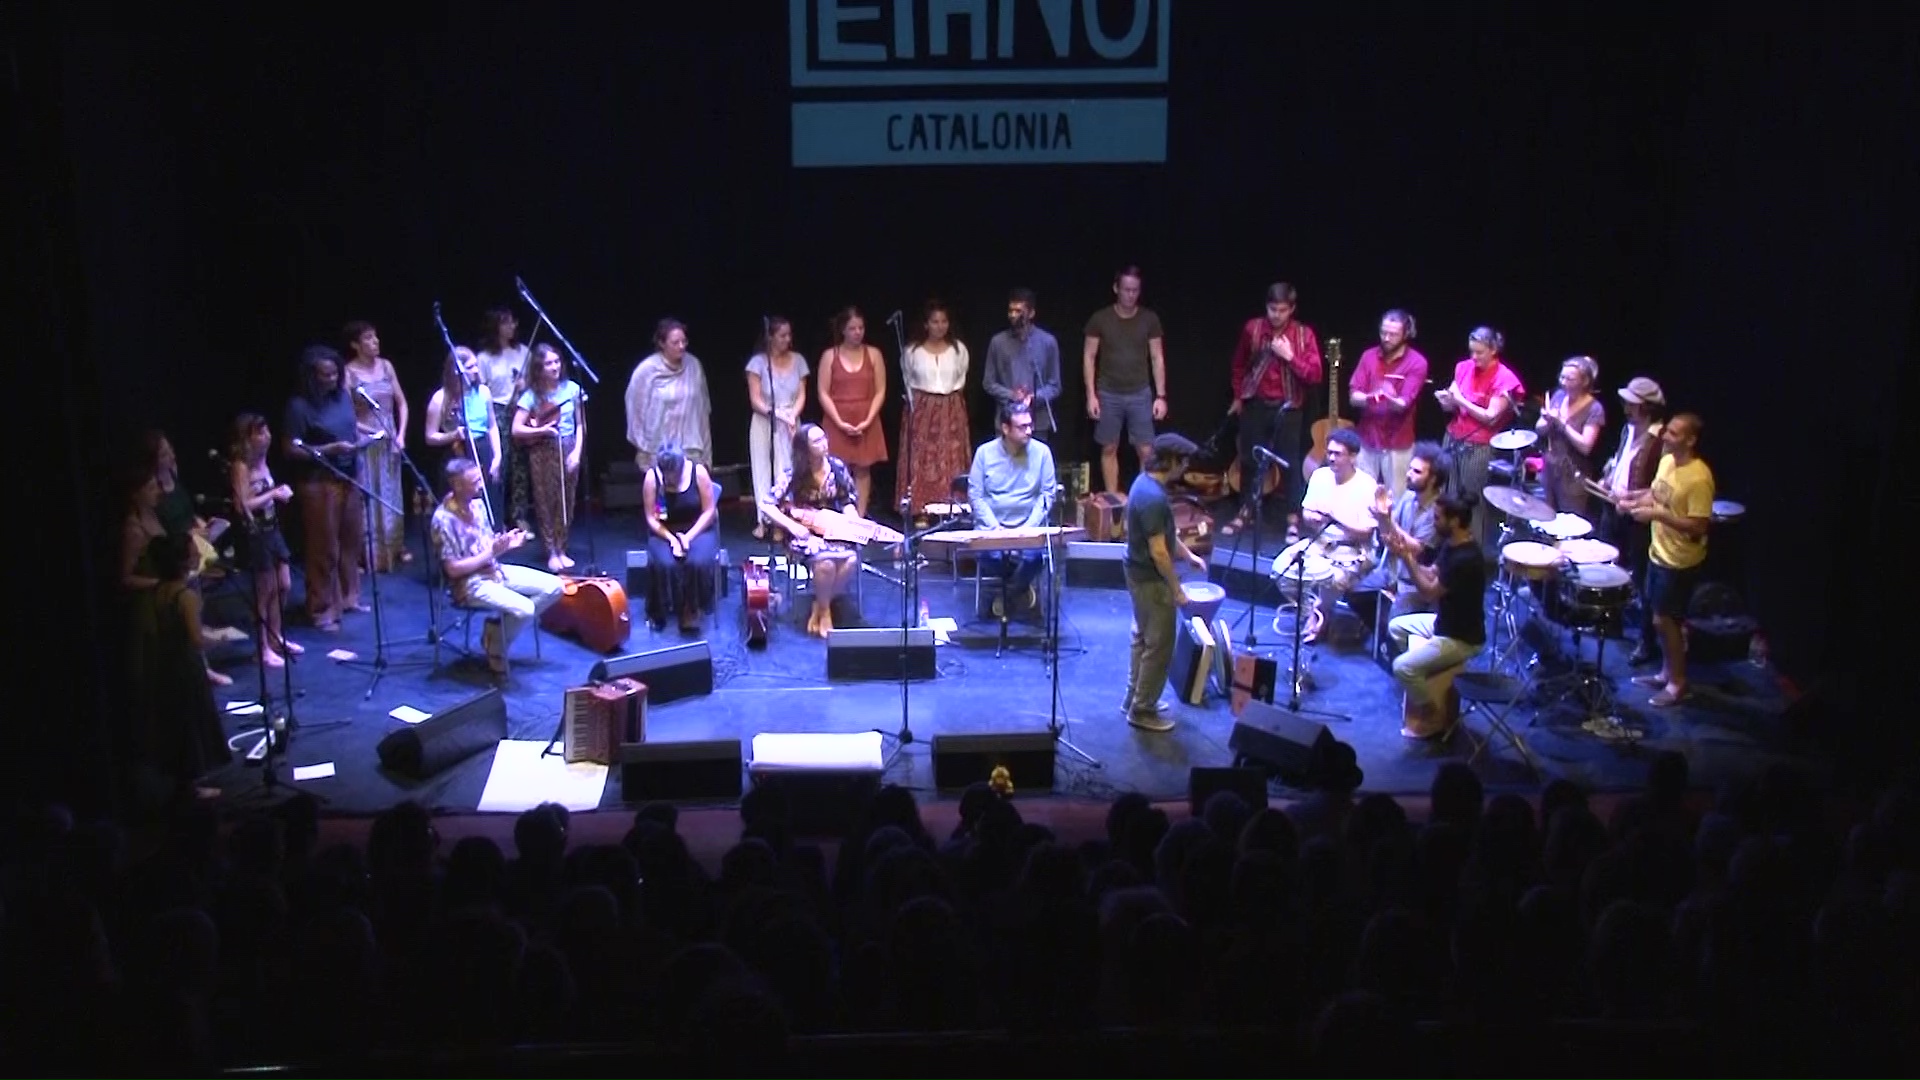 Acaba amb èxit de músics i de públic la 6a edició de l'Ethno Catalonia